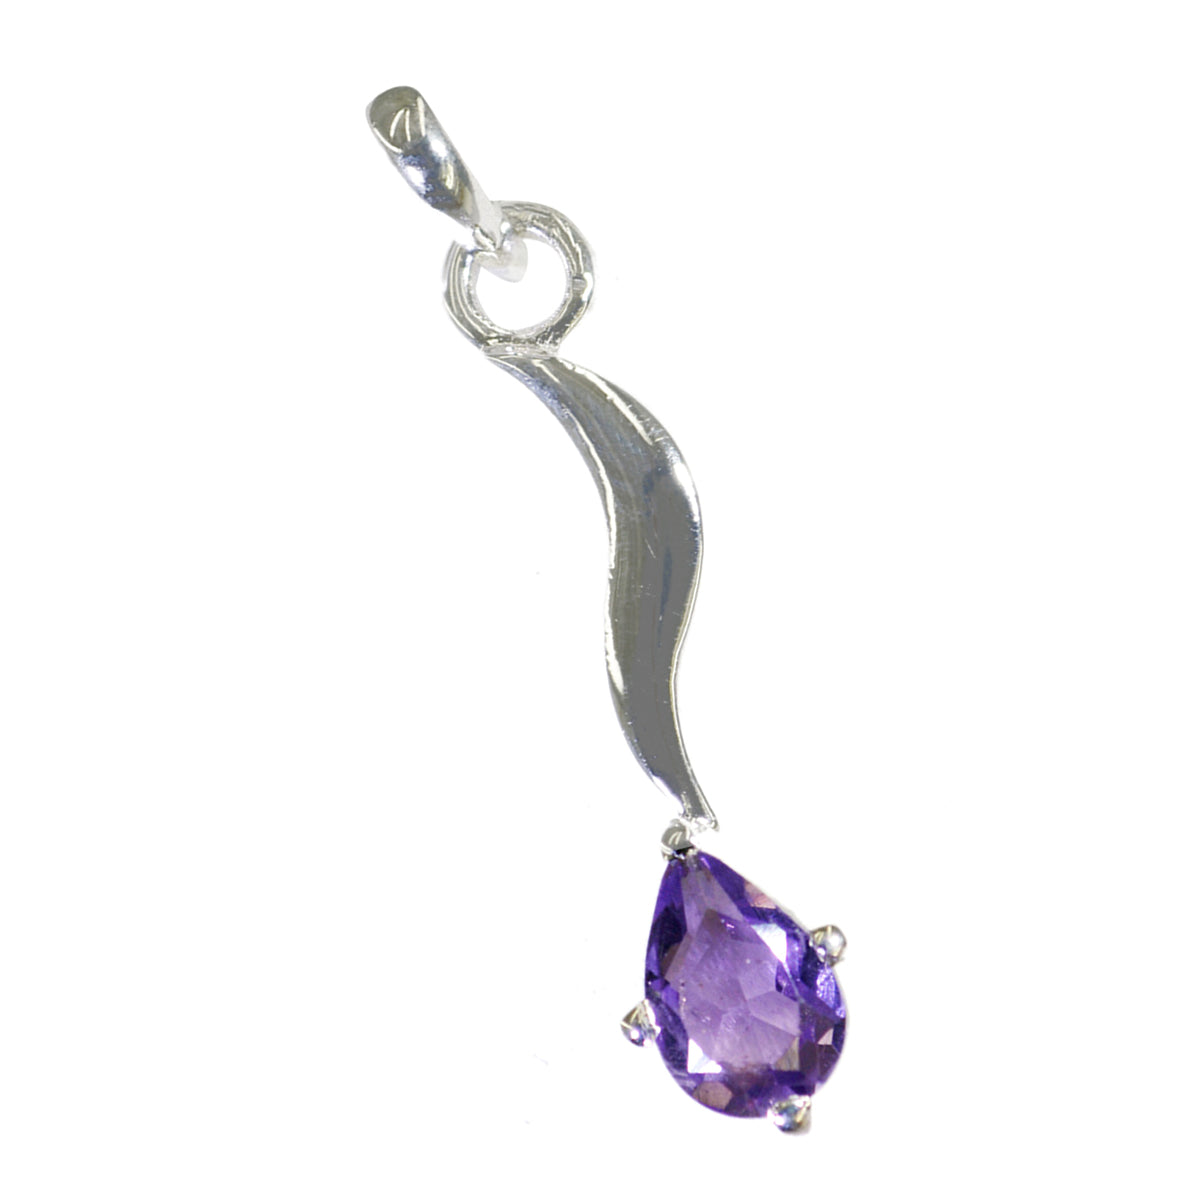 Riyo Good Gems peer gefacetteerde paarse amethist zilveren hanger cadeau voor vrouw